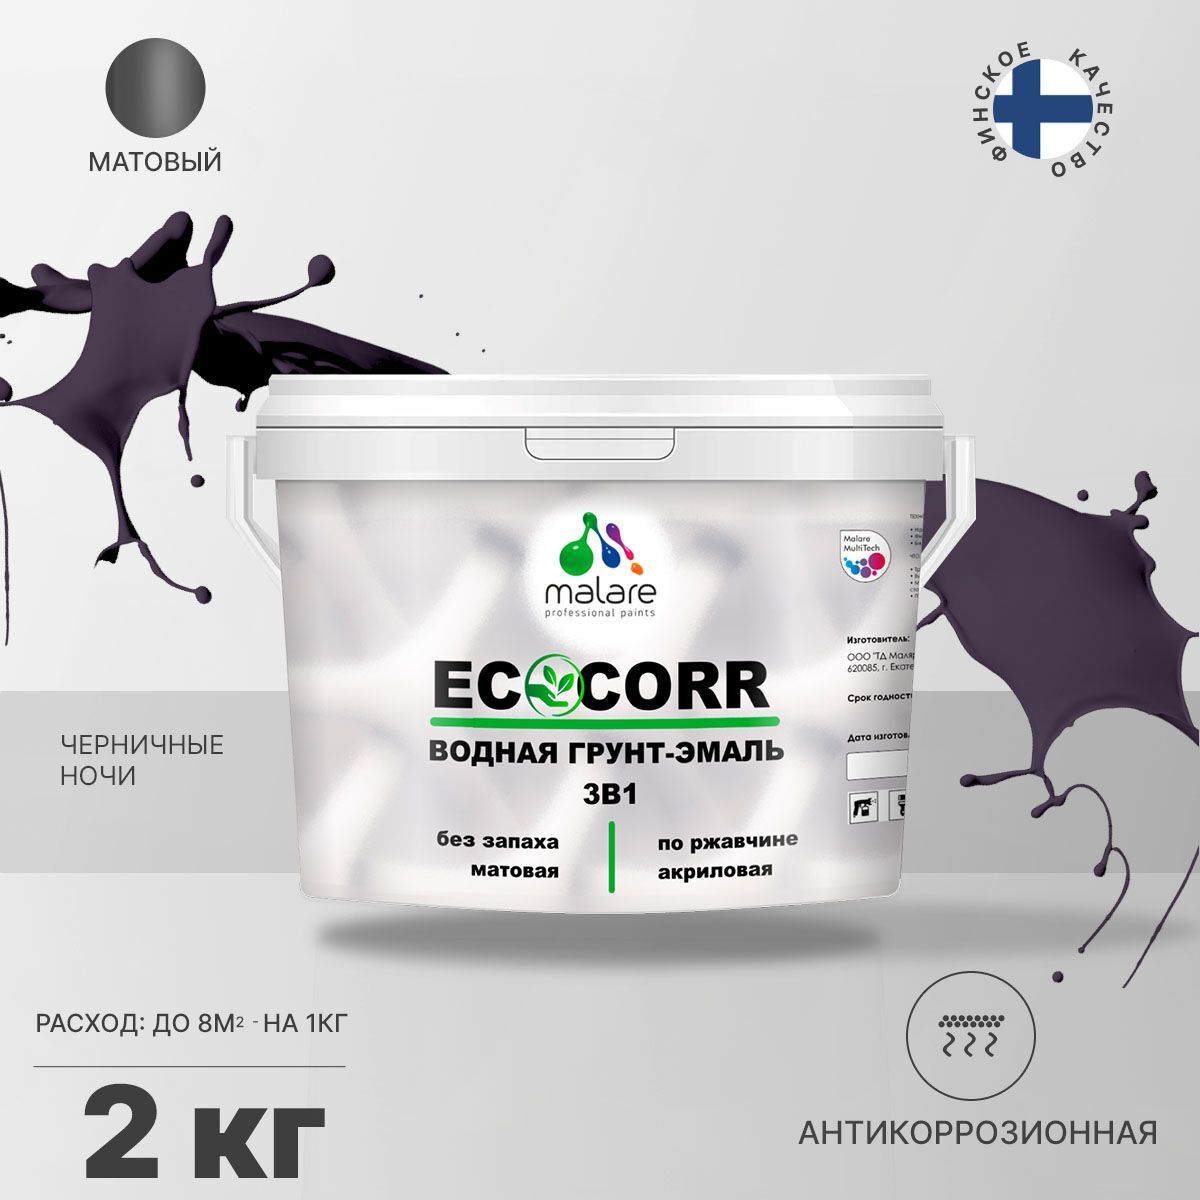 Грунт-эмаль 3 в 1 водная Malare EcoCorr антикоррозионная Акриловая, 2 кг черничные ночи